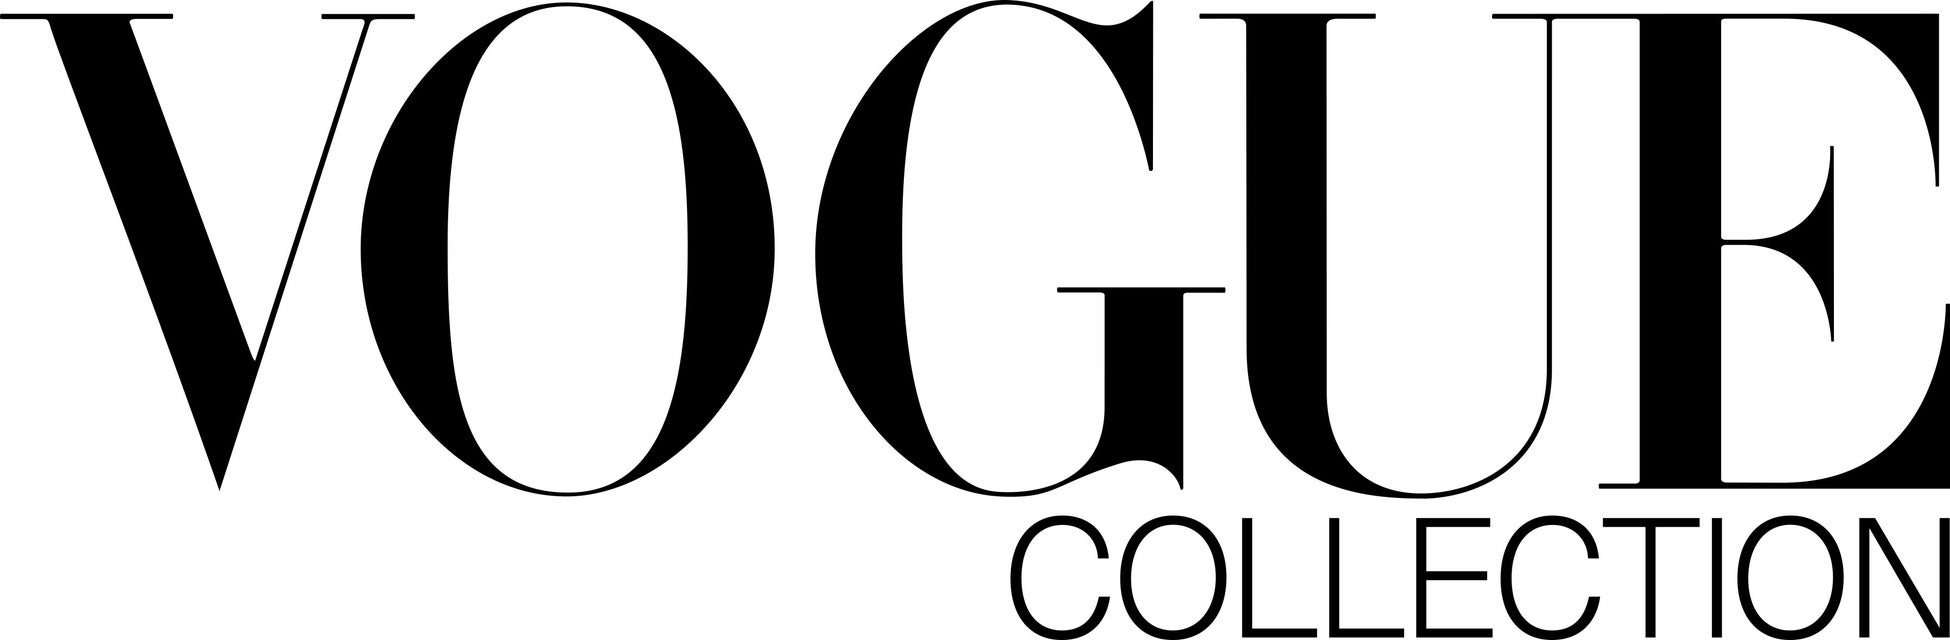 トレーサブルなオーガニックコットン「TRUECOTTON」SSに続き、ファッション雑誌『VOGUE』が展開するアパレルライン「VOGUE Collection」の第二弾シリーズに採用のサブ画像4